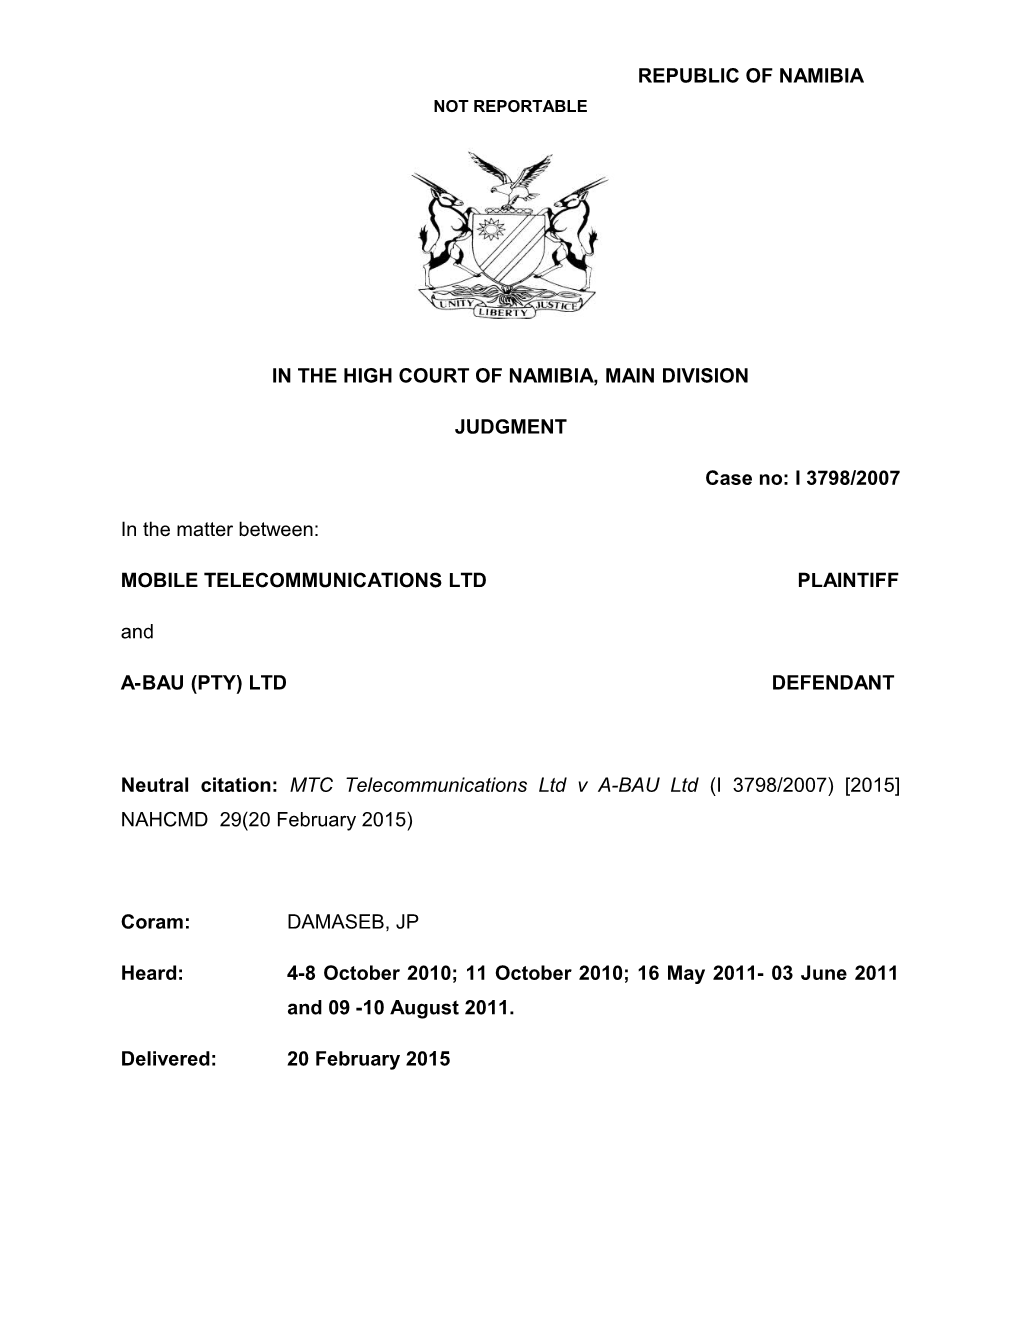 MTC Telecommunications Ltd V A-BAU Ltd (I 3798-2007) 2015 NAHCMD 29(20 February 2015)